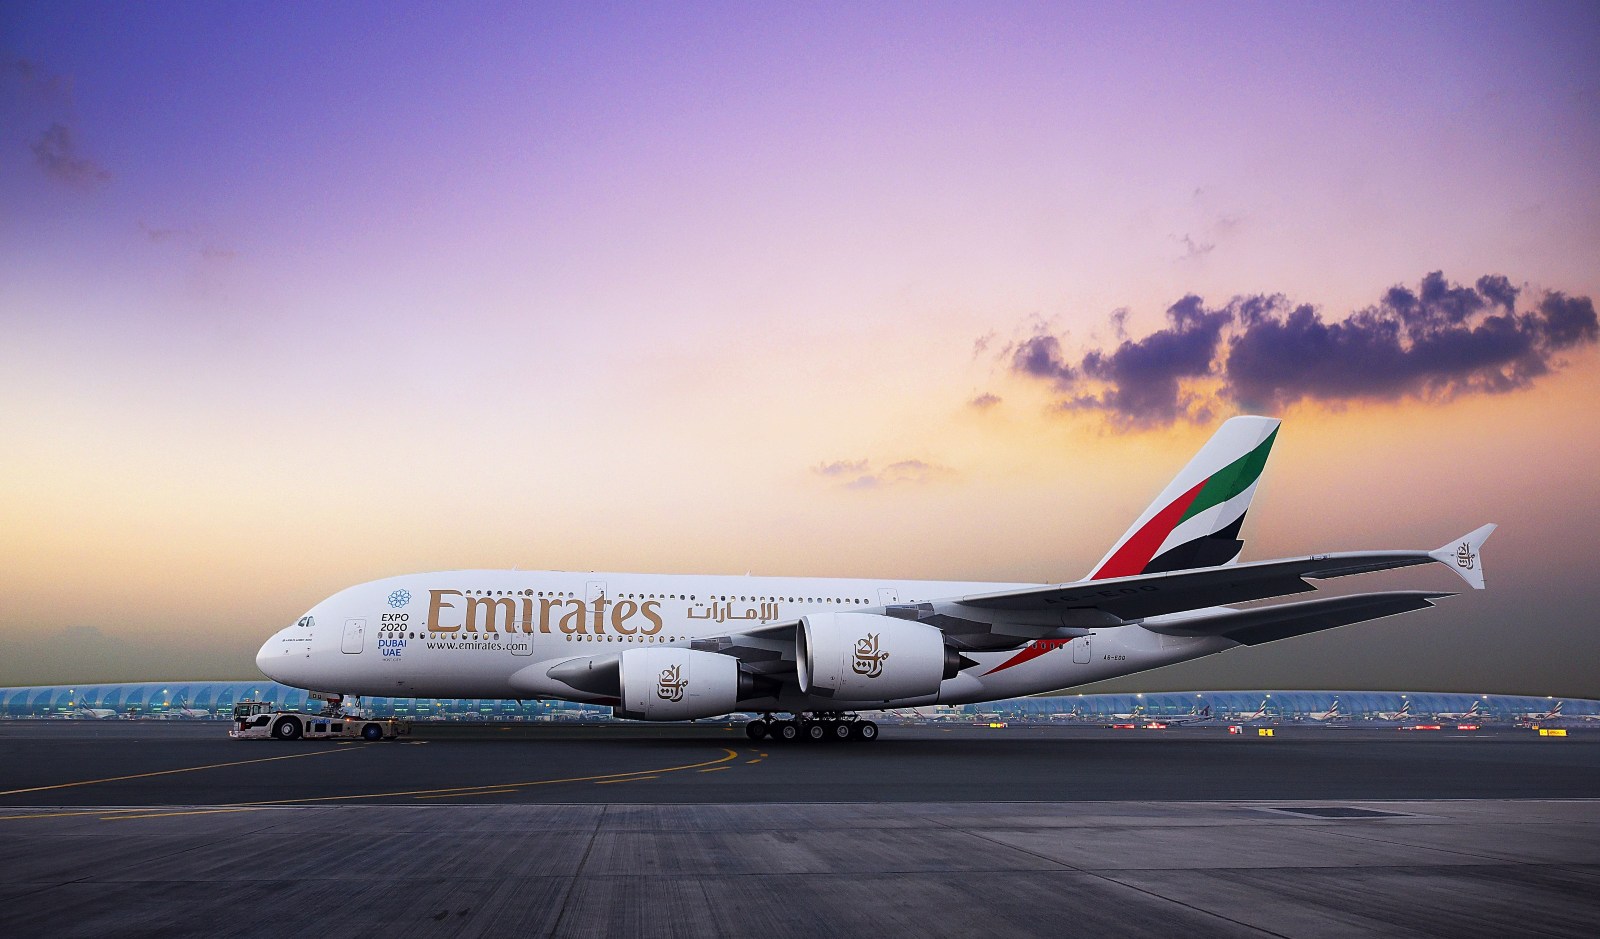 PRZEGLĄD PROMOCJI: oferta Emirates do 20 stycznia